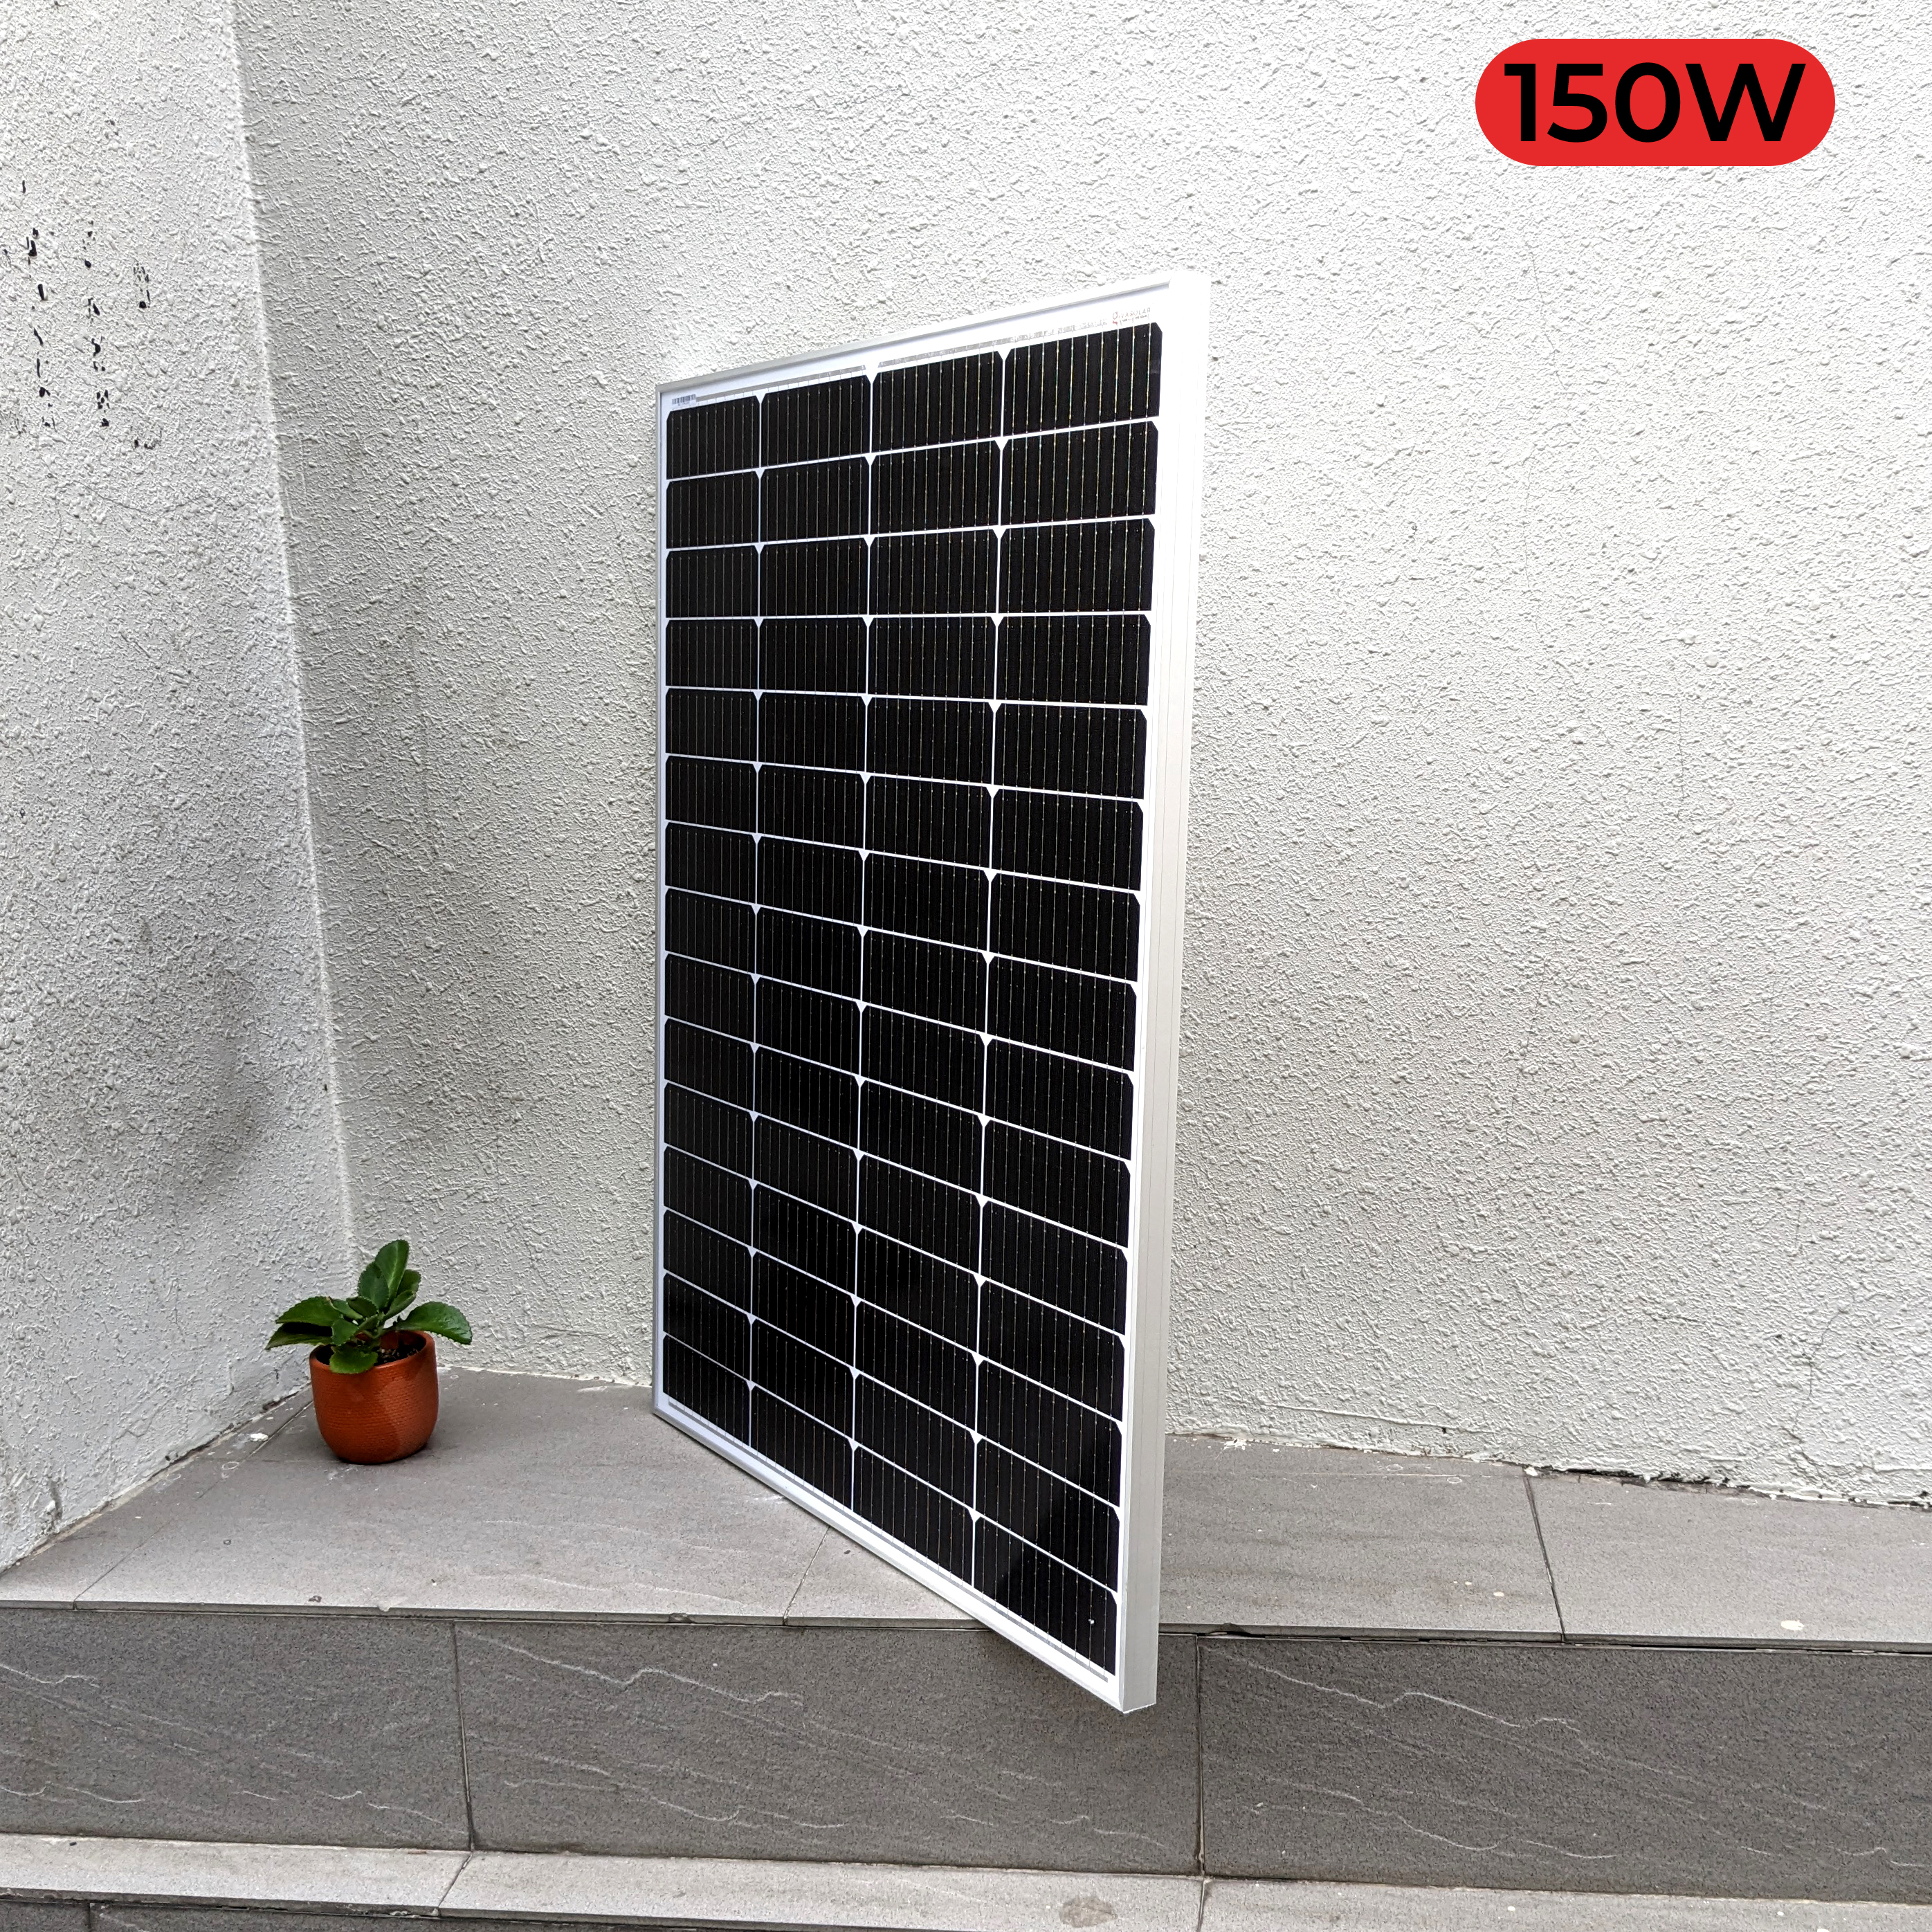 Tấm pin năng lượng mặt trời 150W 3